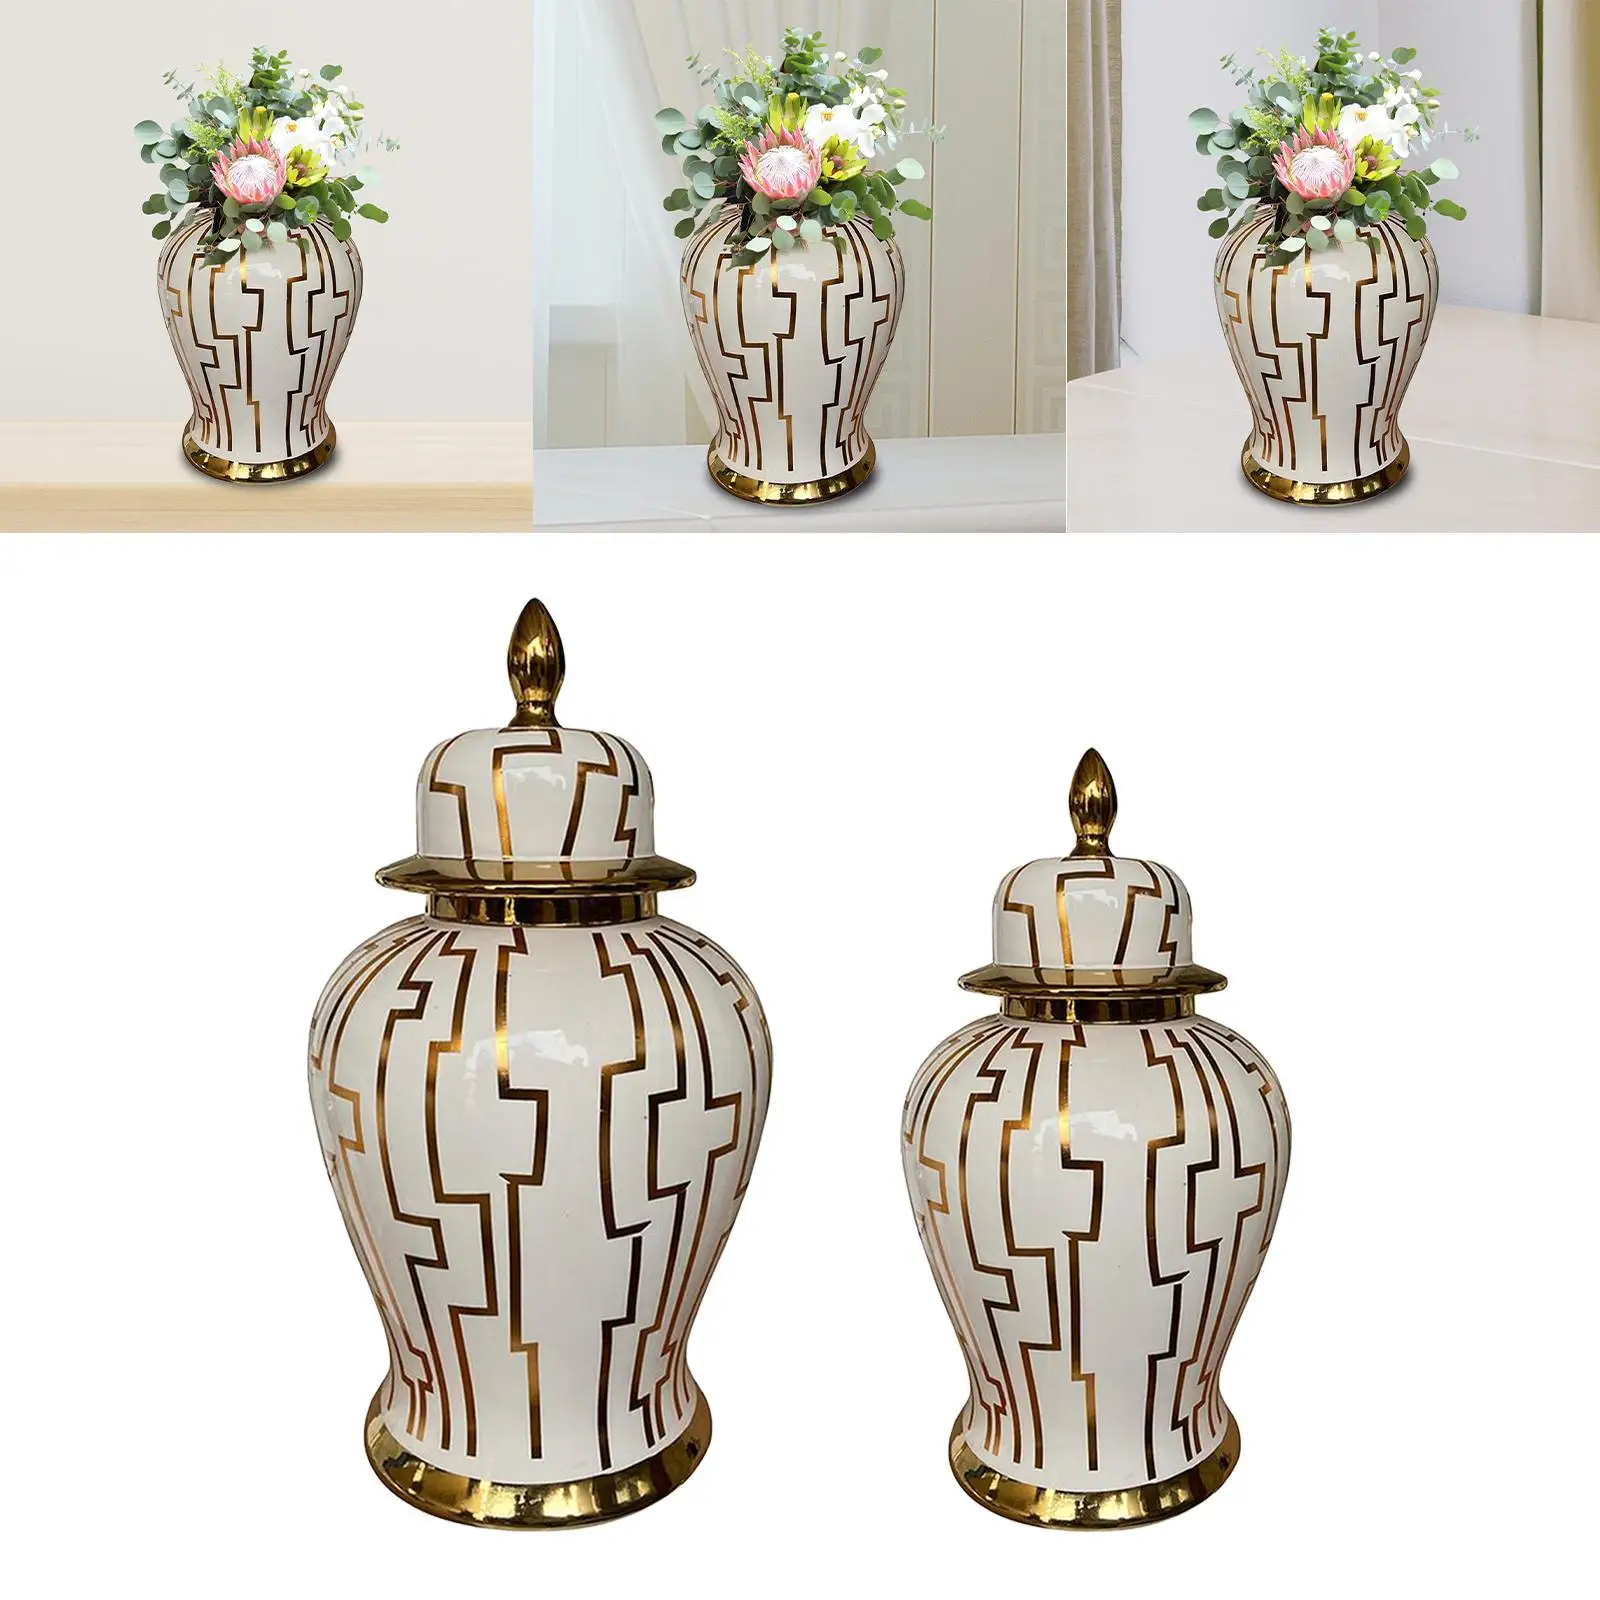 Porcelain Ginger Jar Floral Arrangement Storage Ornament Ceramic Flower Vase Temple Jars for Home Housewarming Living Room Party